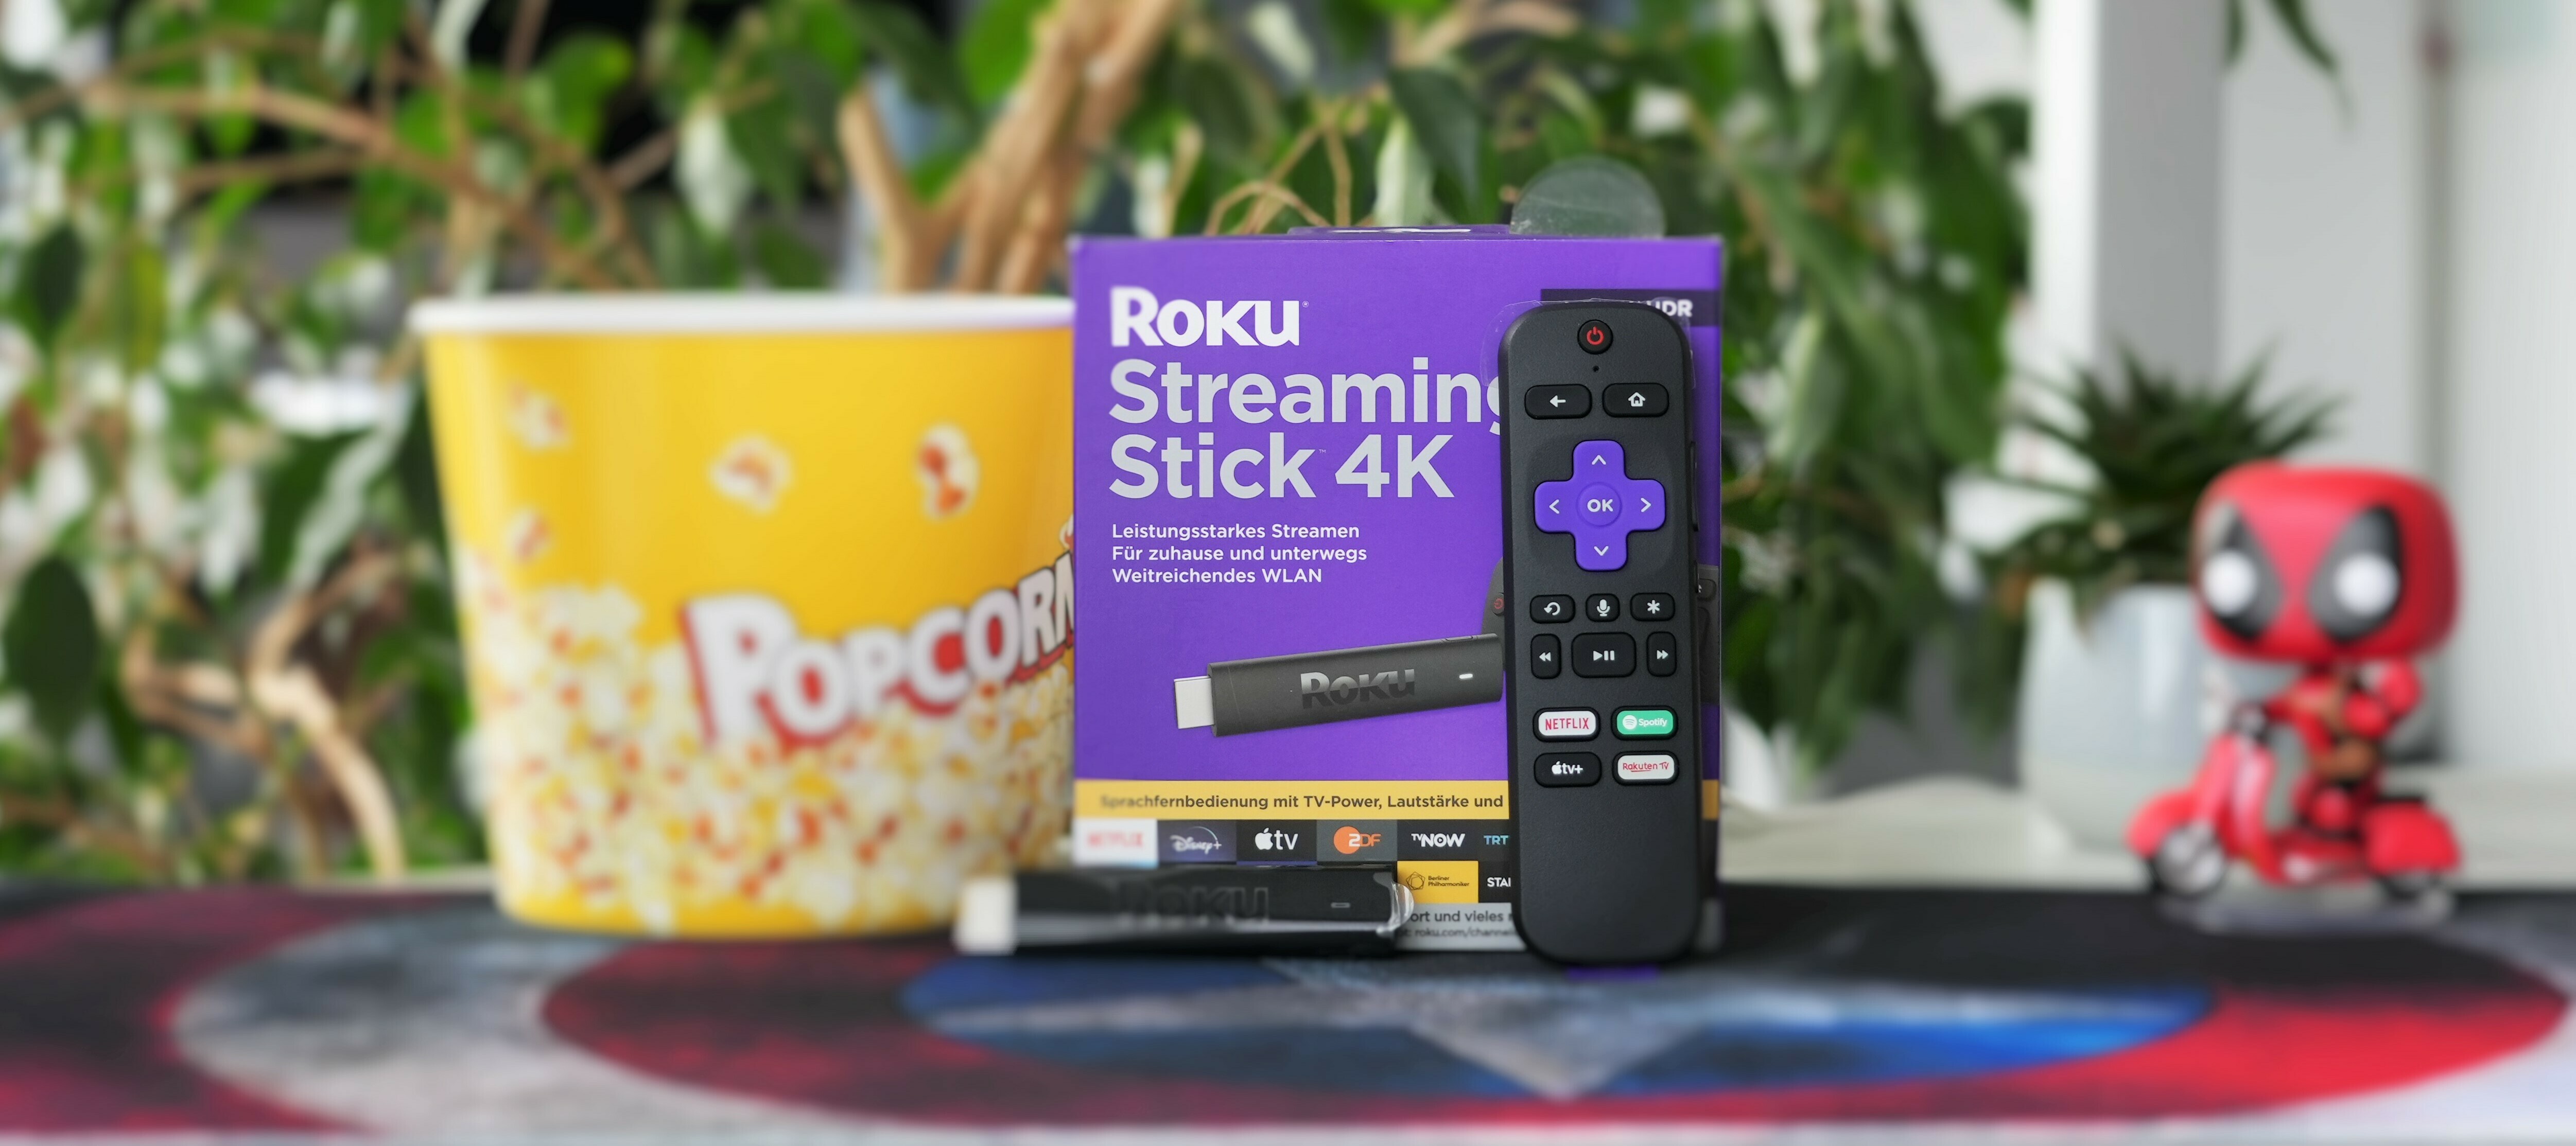 Roku Streaming Stick 4K - teste das Streaming-Erlebnis!